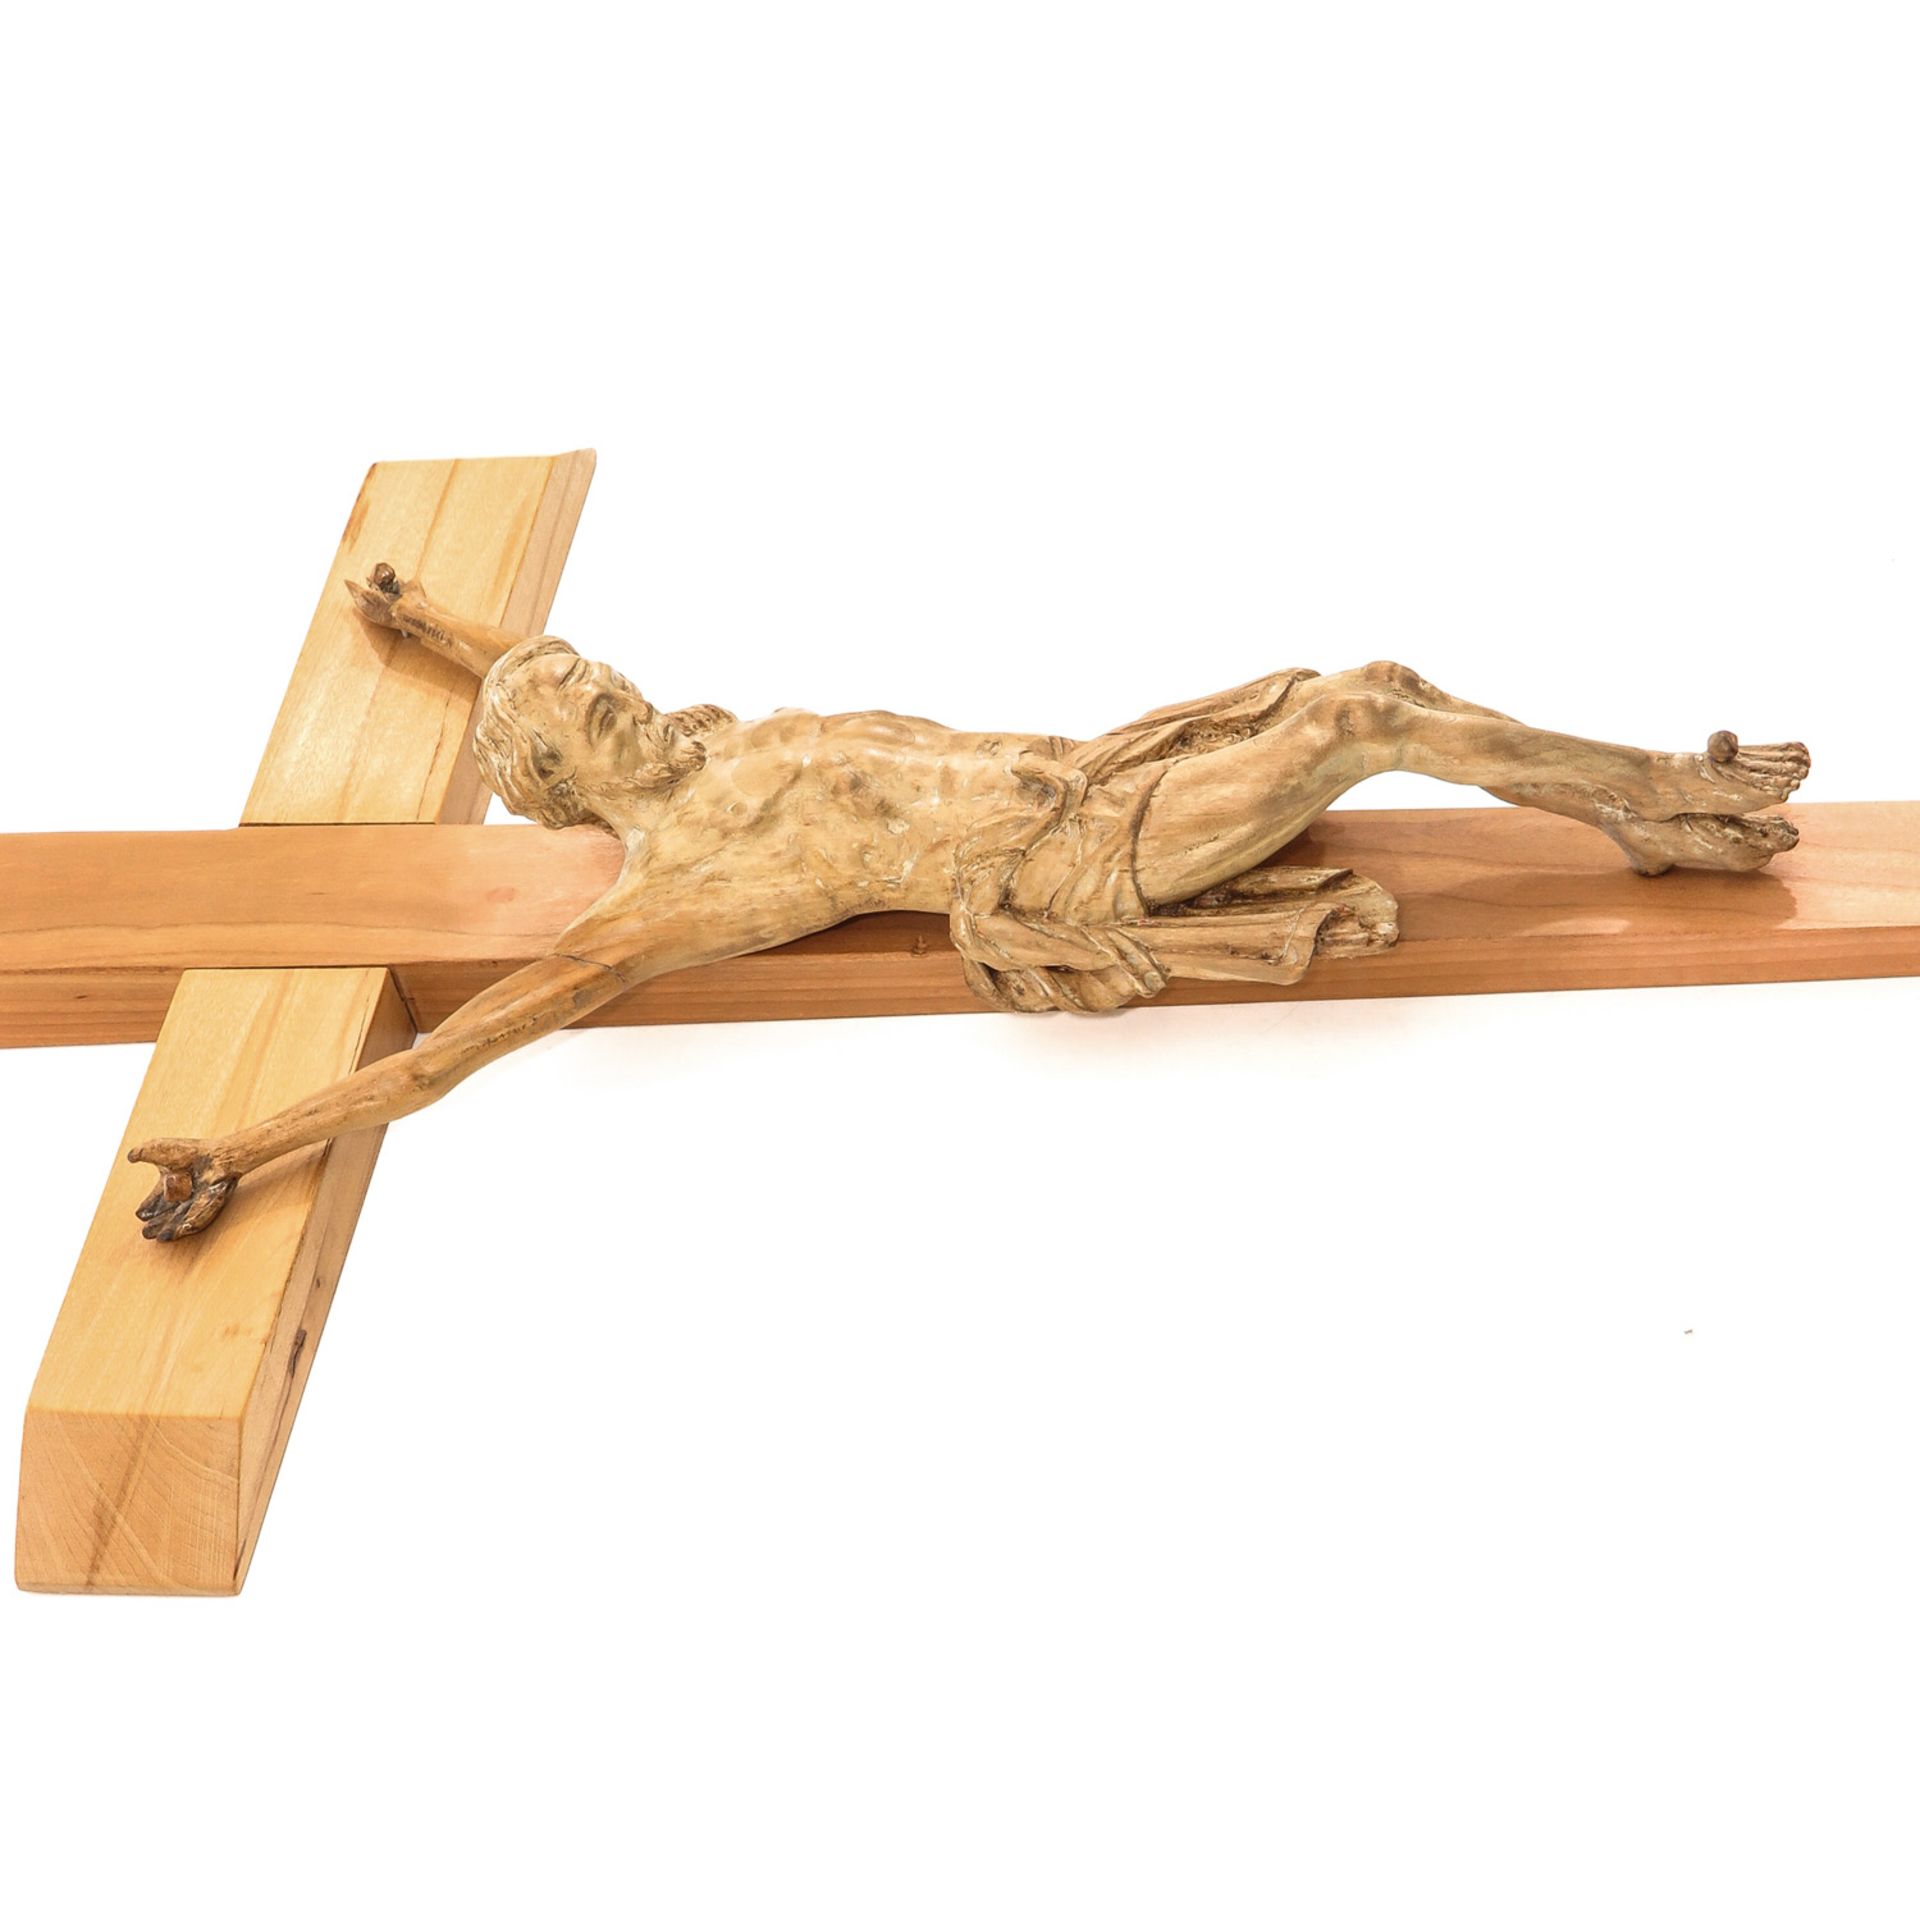 A Wood Crucifix - Image 3 of 6